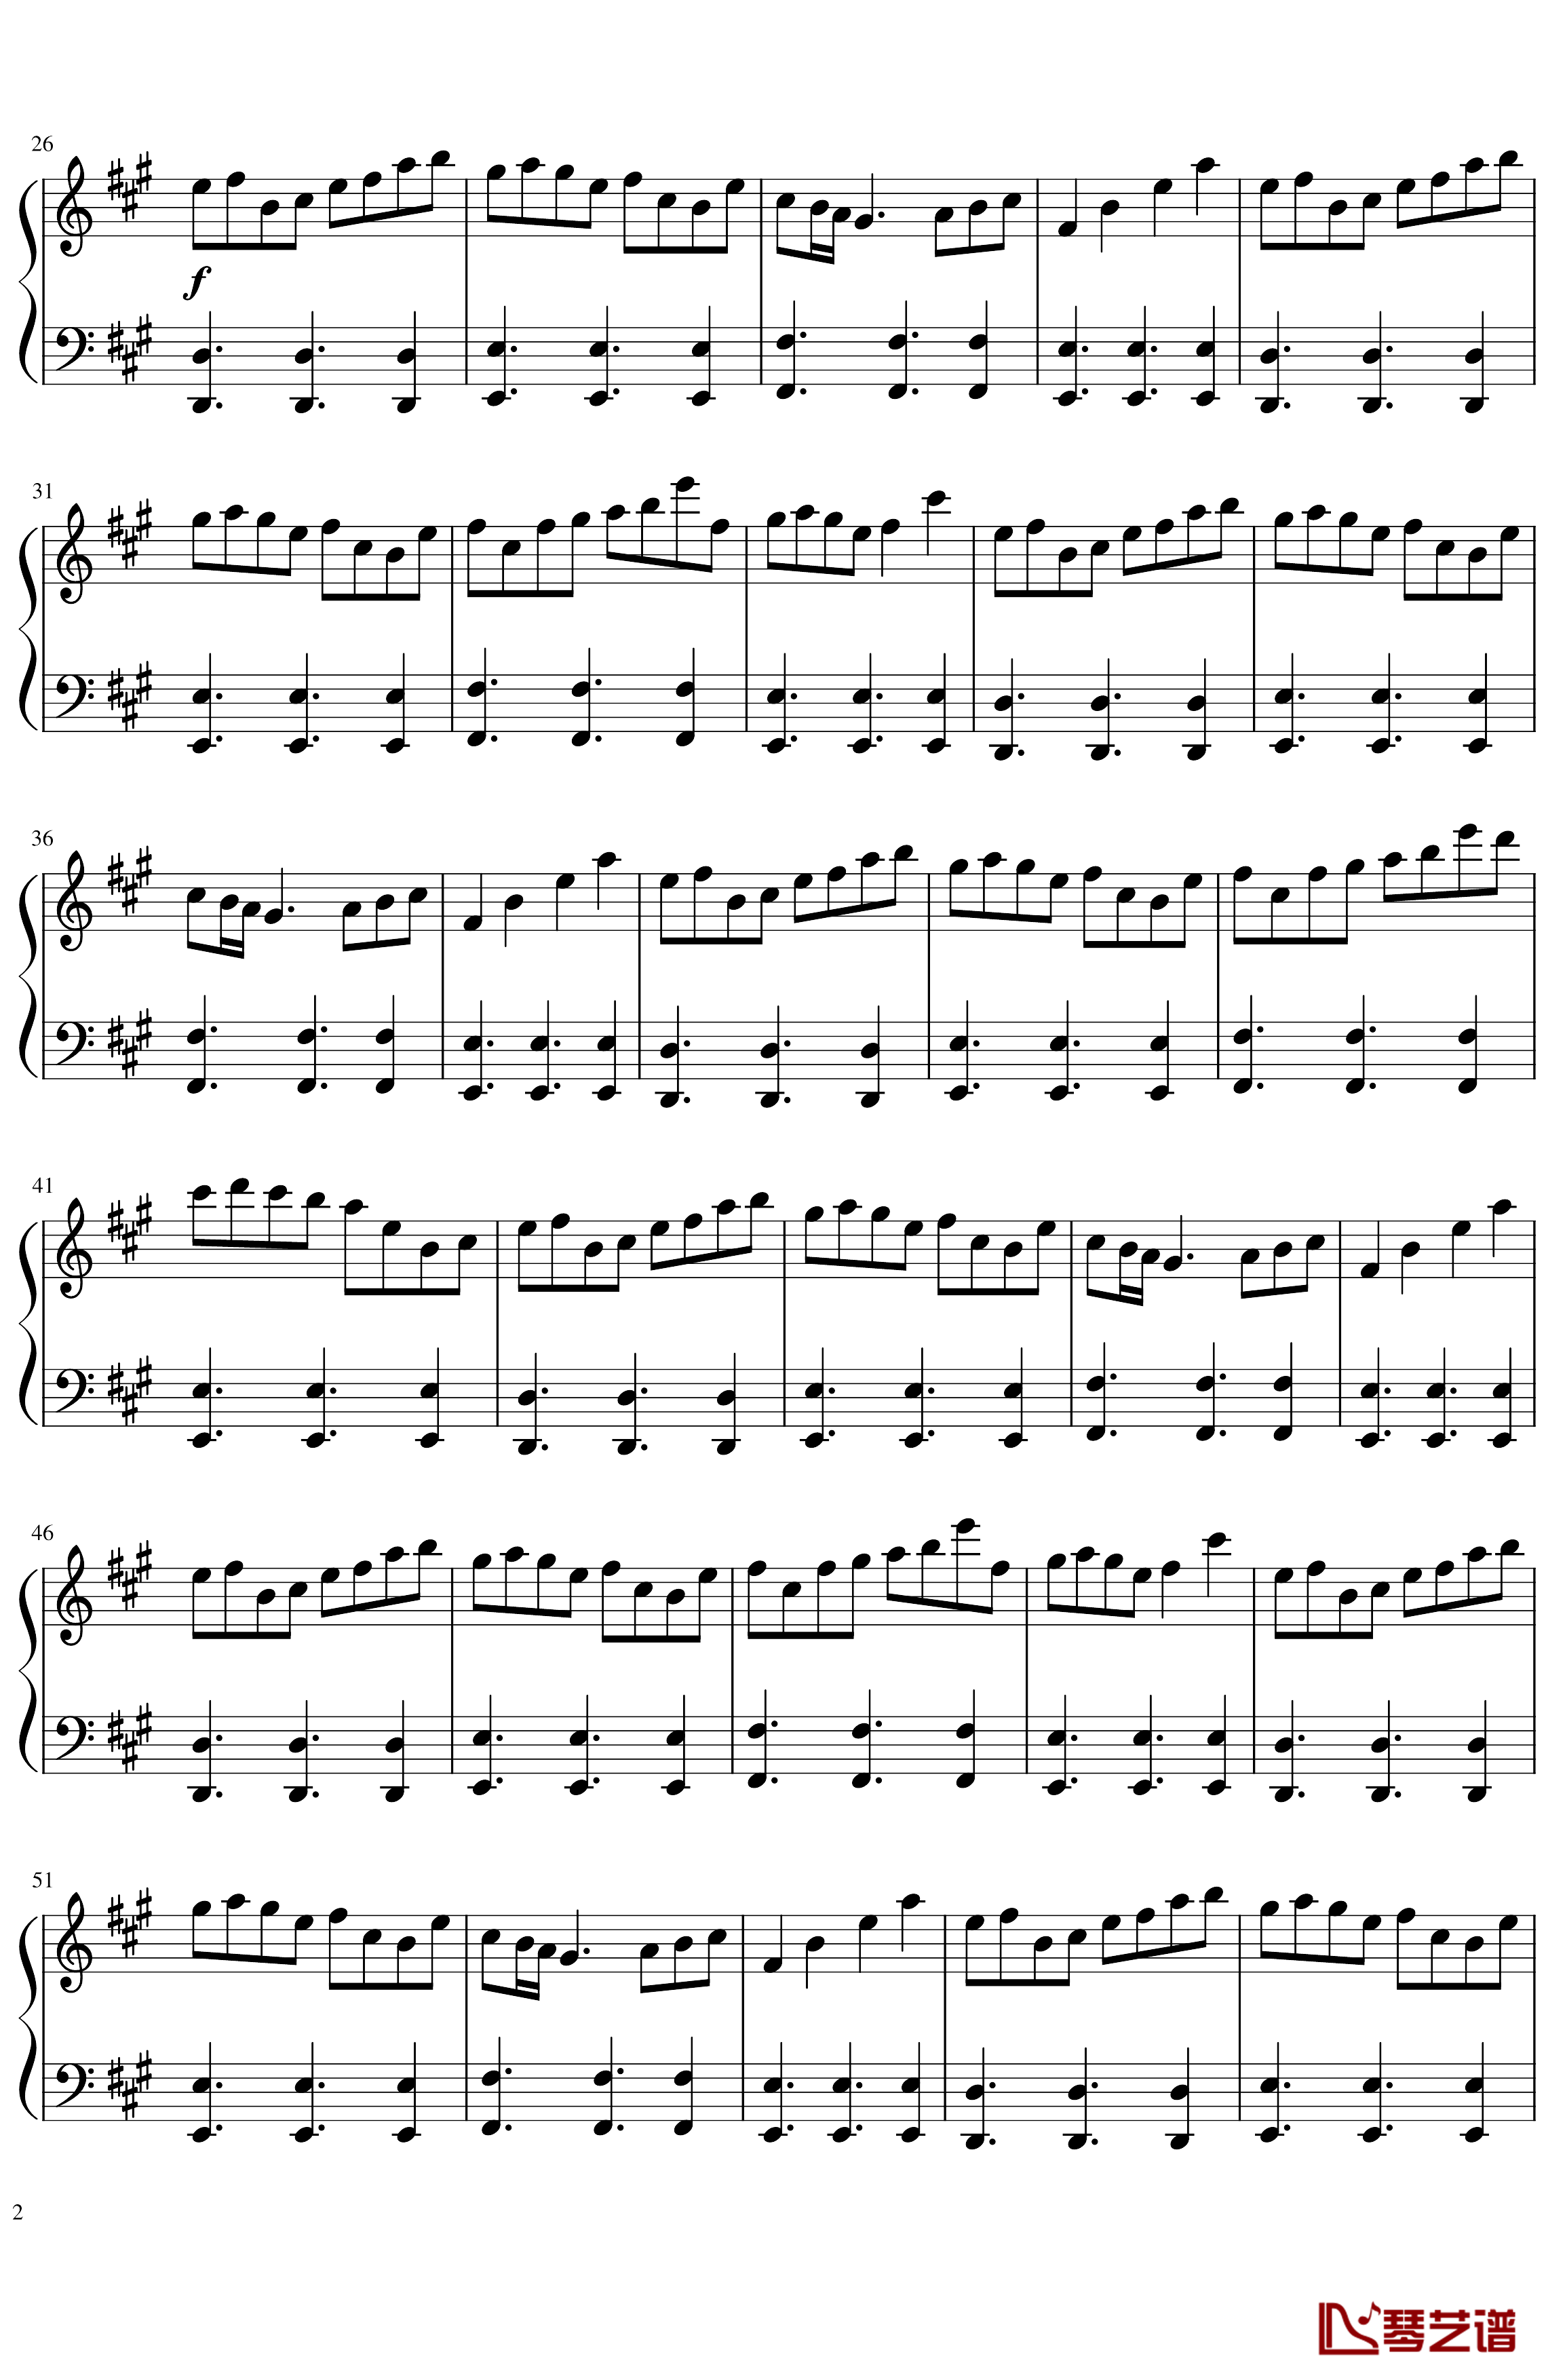 ソロモンの白椿钢琴谱-交响乐转钢琴版-碧蓝航线2